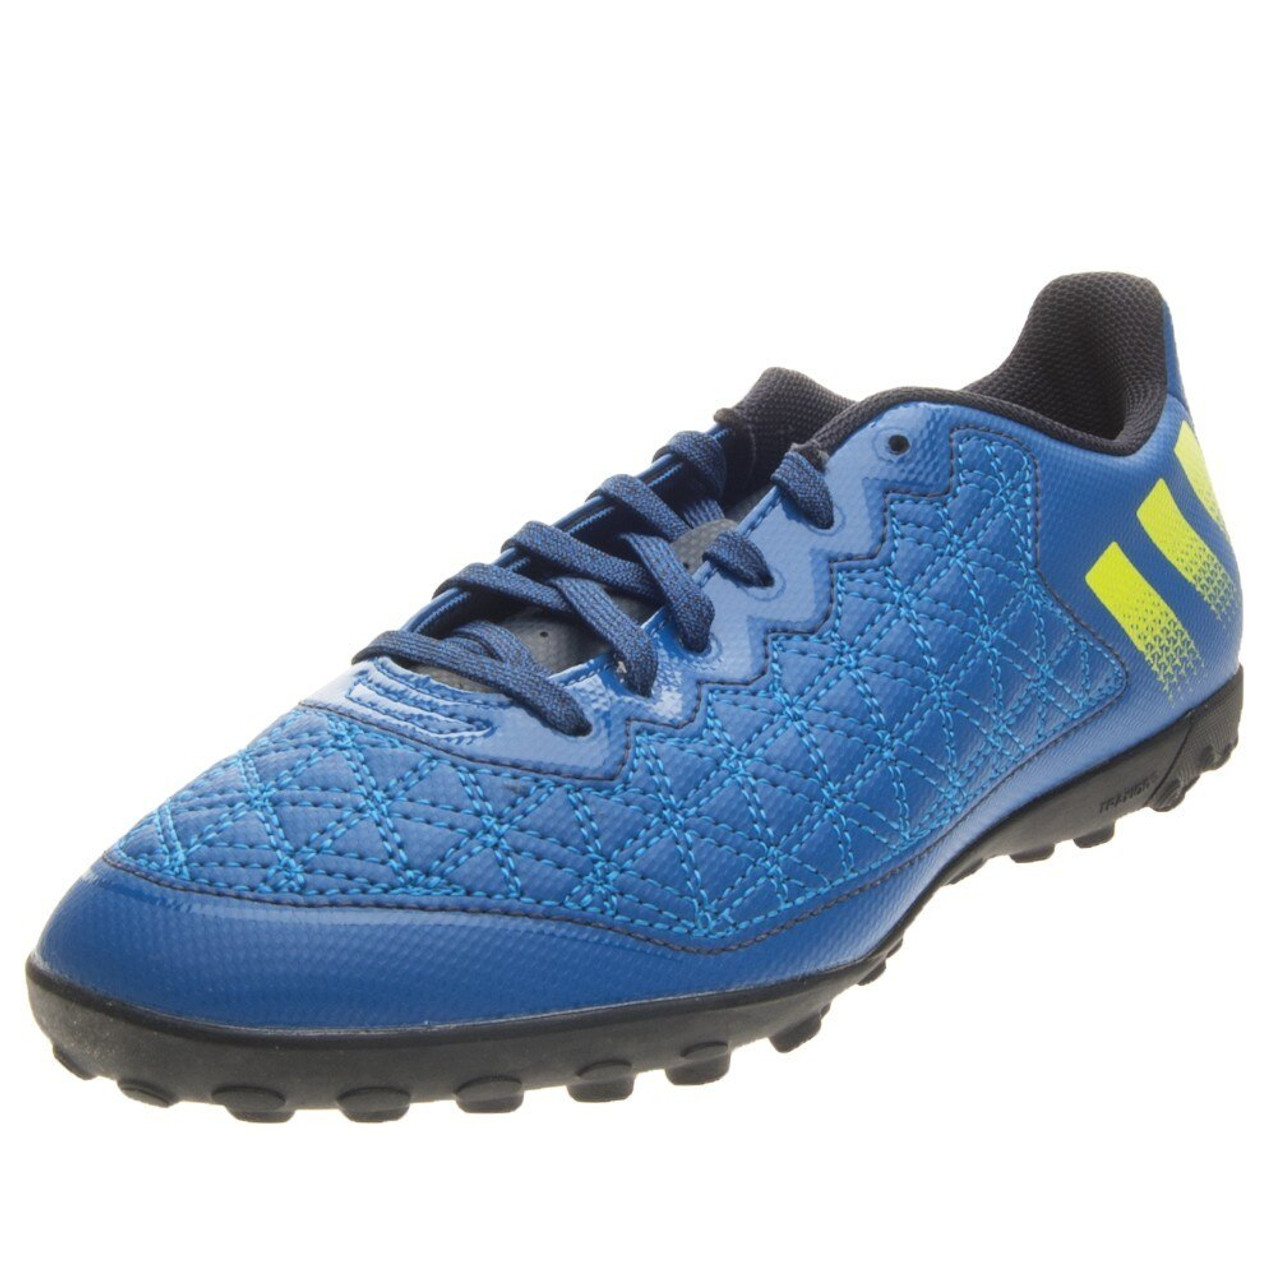 Adidas Ace 16.3 CG - Night Navy/Semi Solar Slime- SD (072922) - ohp soccer